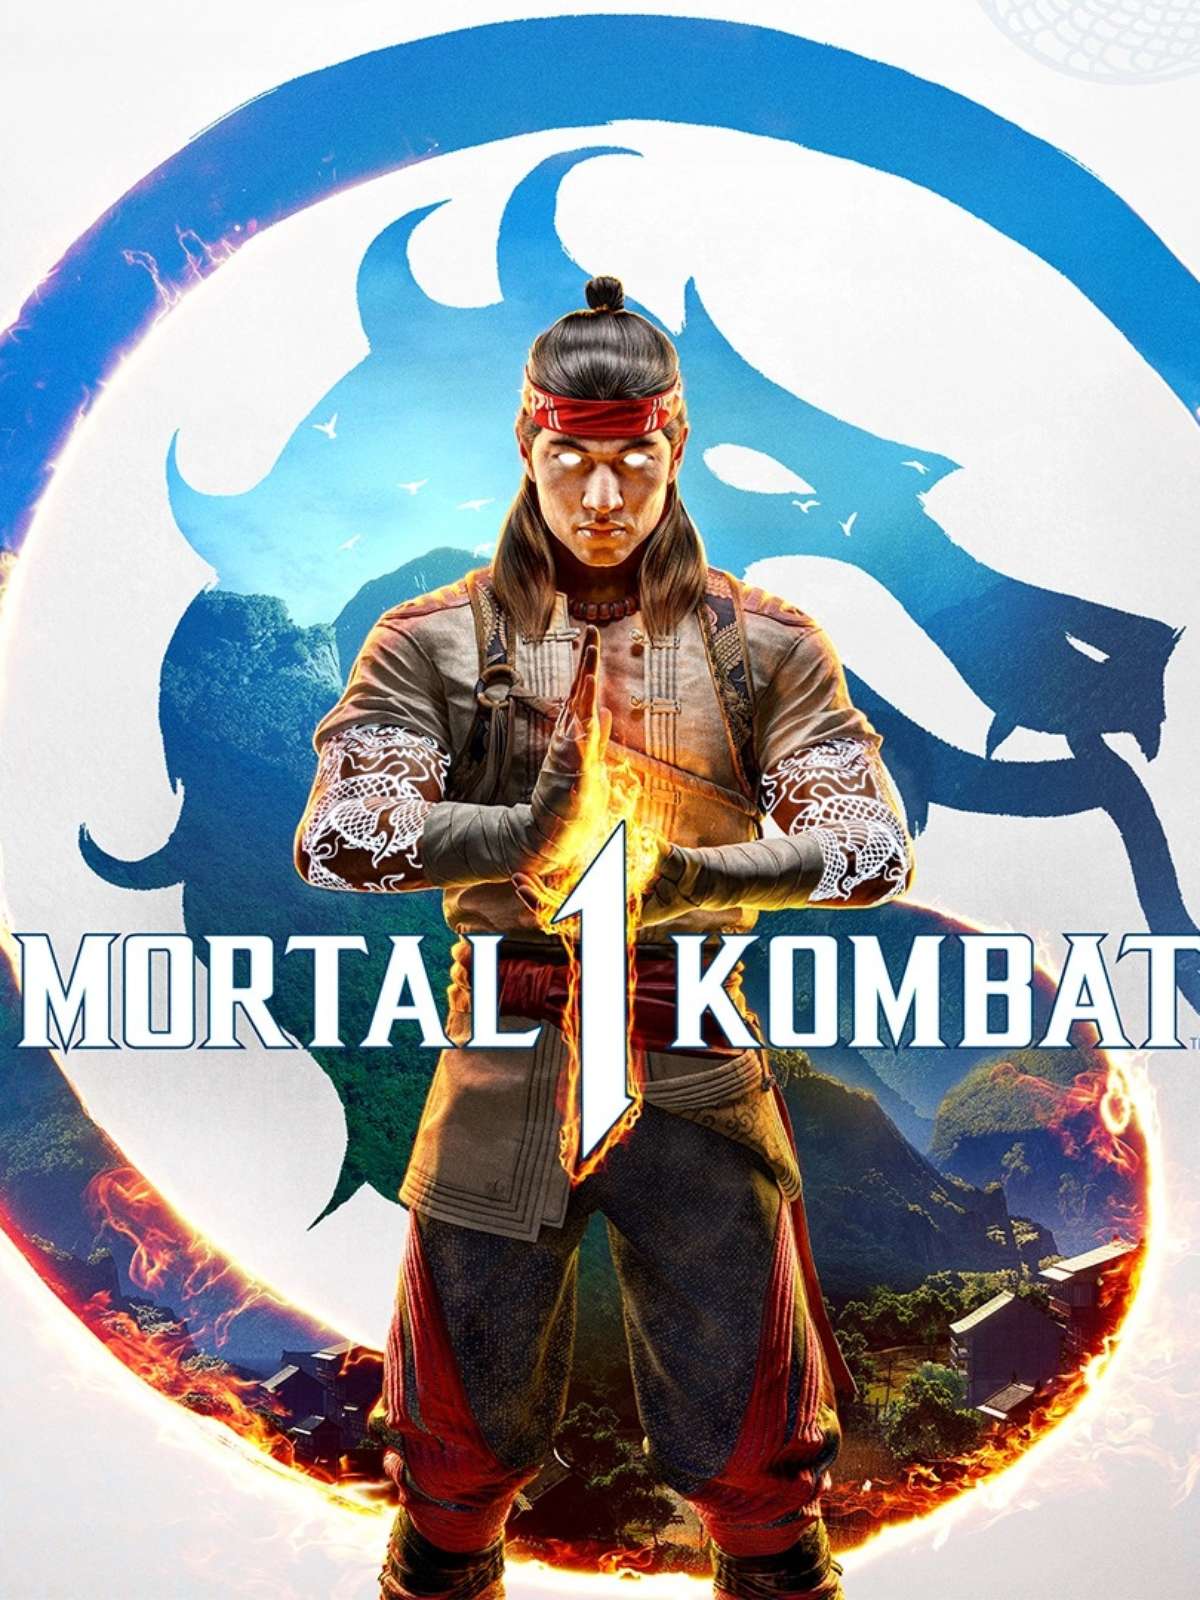 Porque o Xbox 360 não tem um lutador exclusivo no seu Mortal Kombat